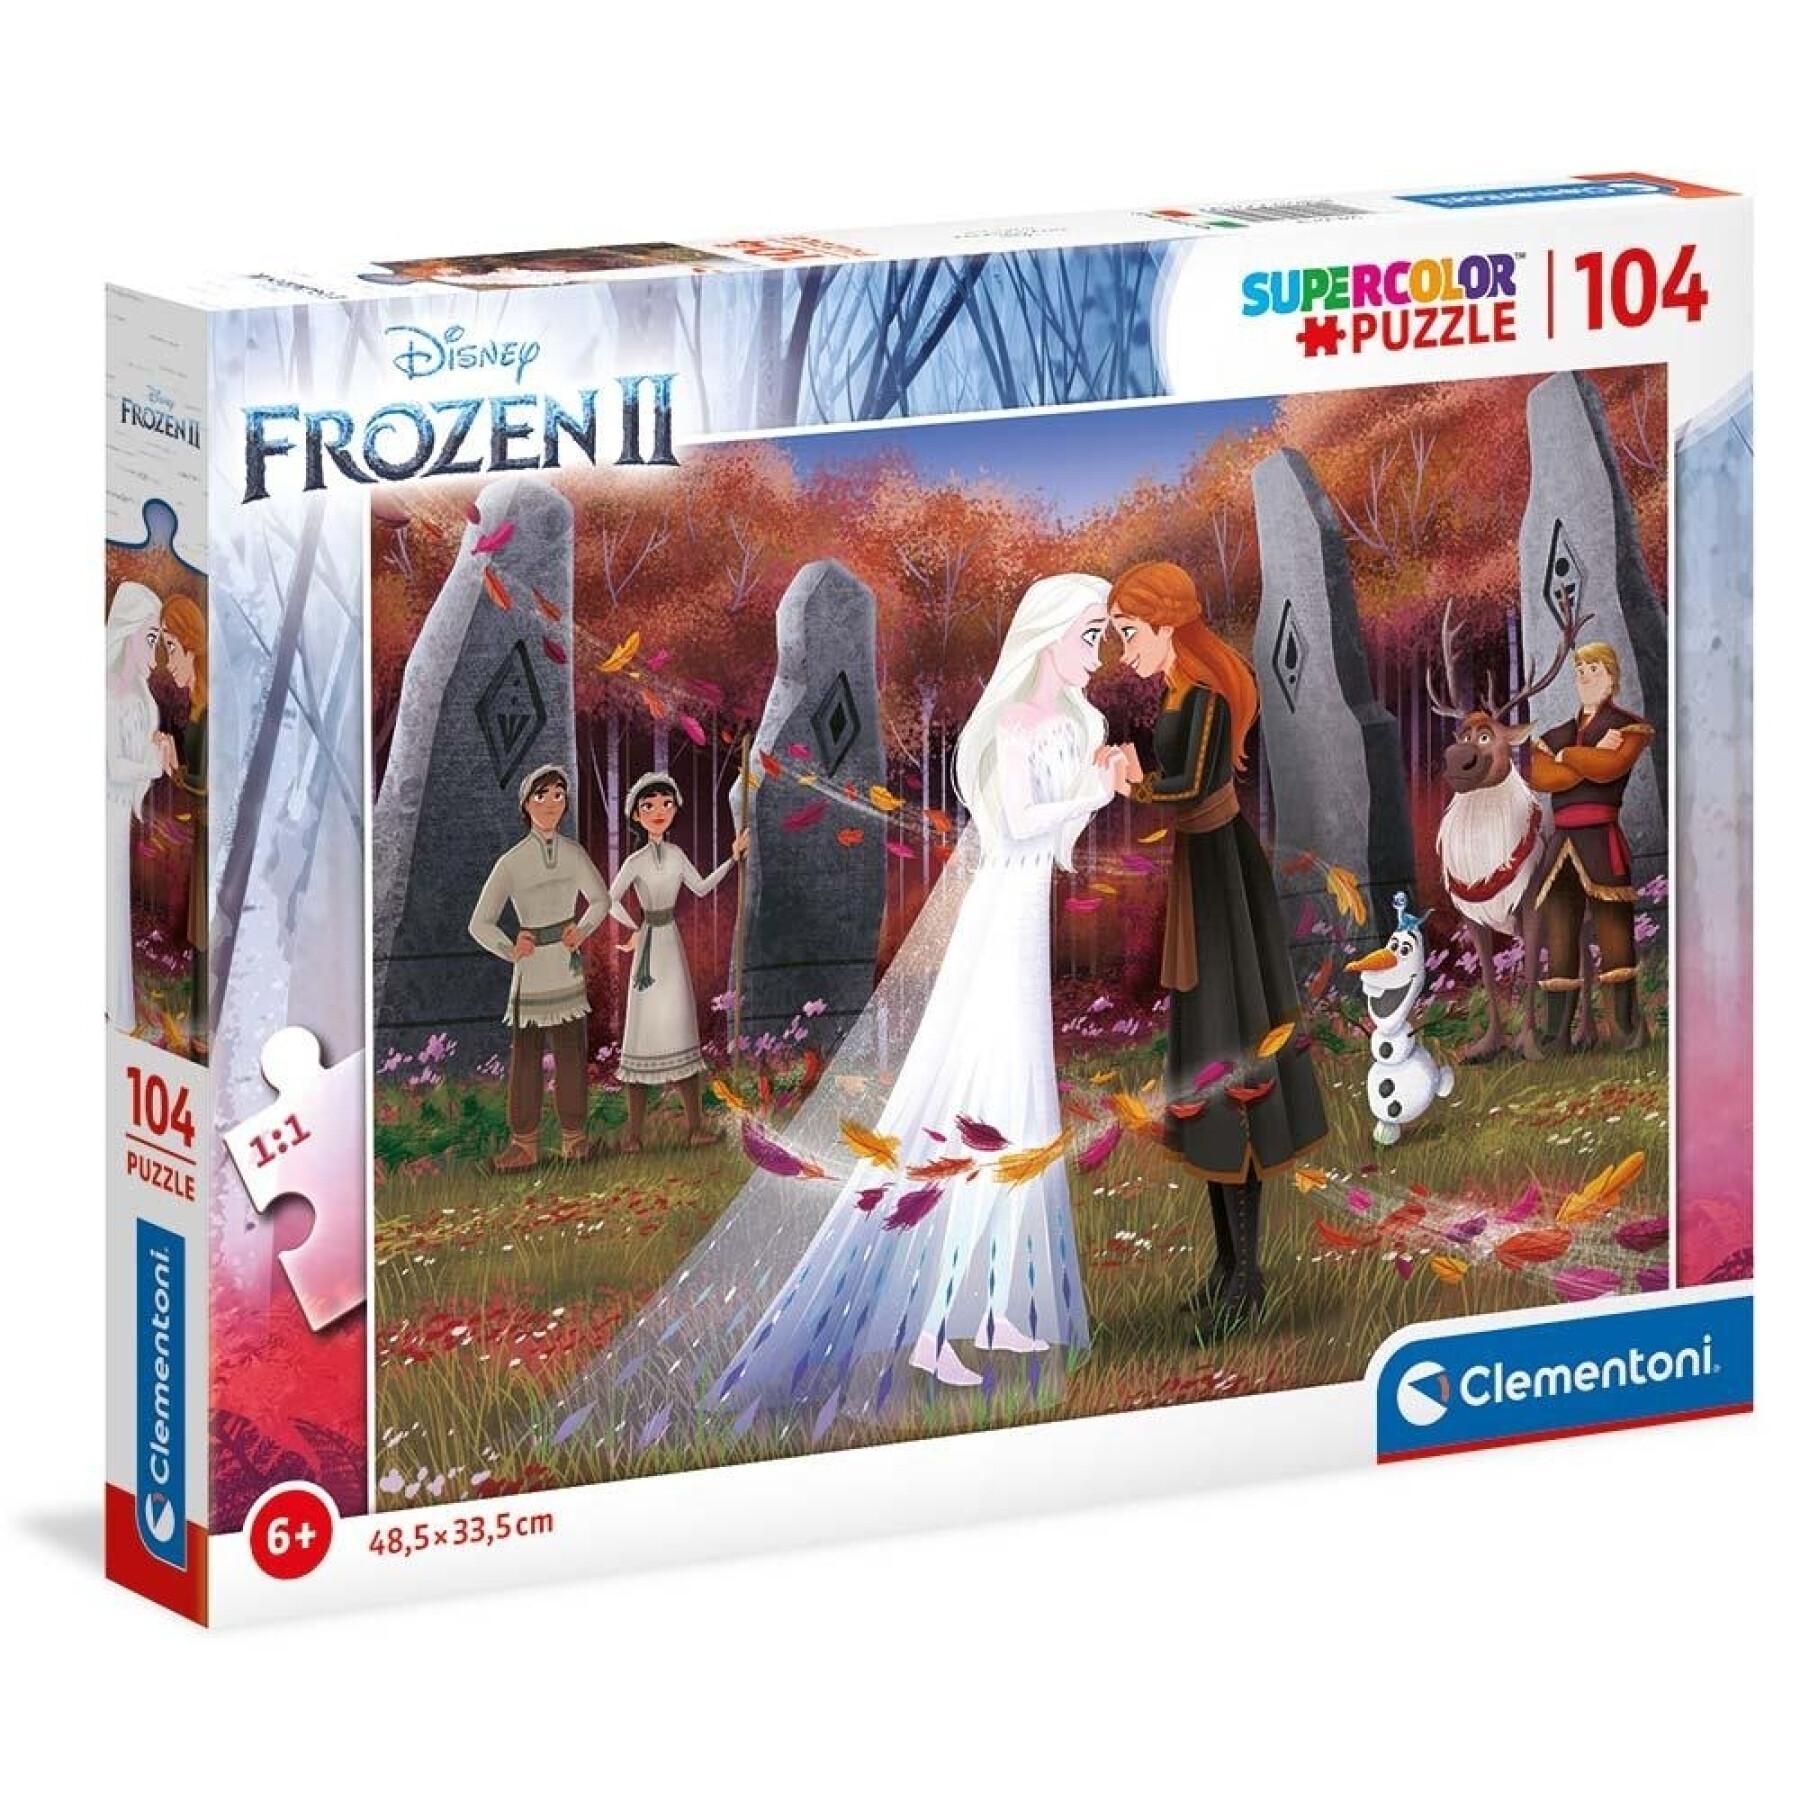 Puzzle de 104 piezas Frozen II